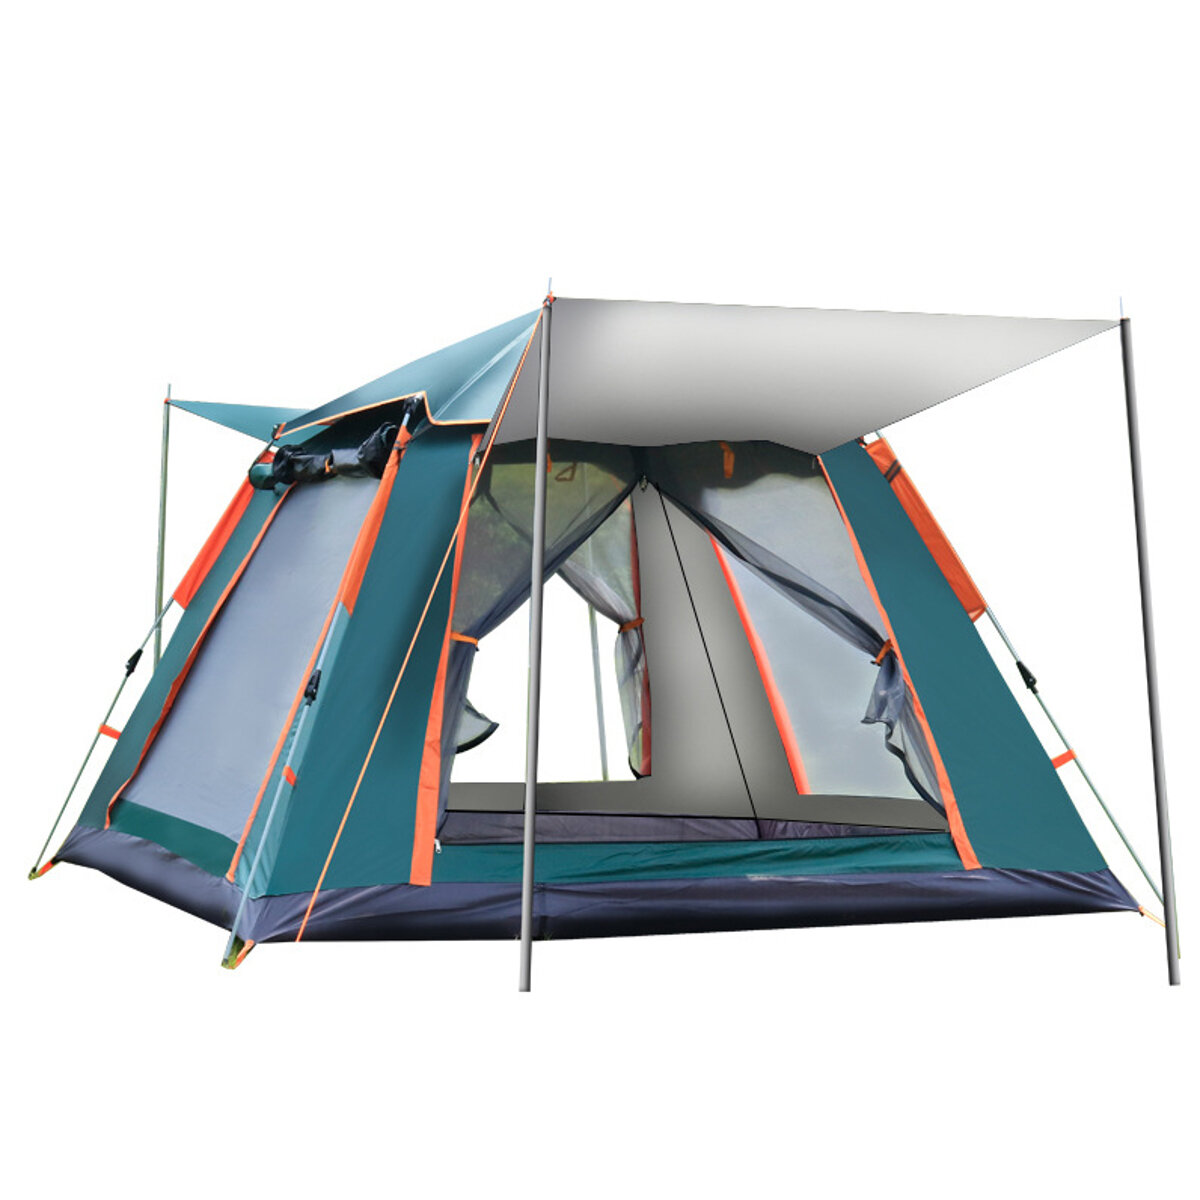 IPRee® 6-7 persone Tenda completamente automatica Colla argentata per esterni campeggio Tenda da viaggio per picnic in famiglia